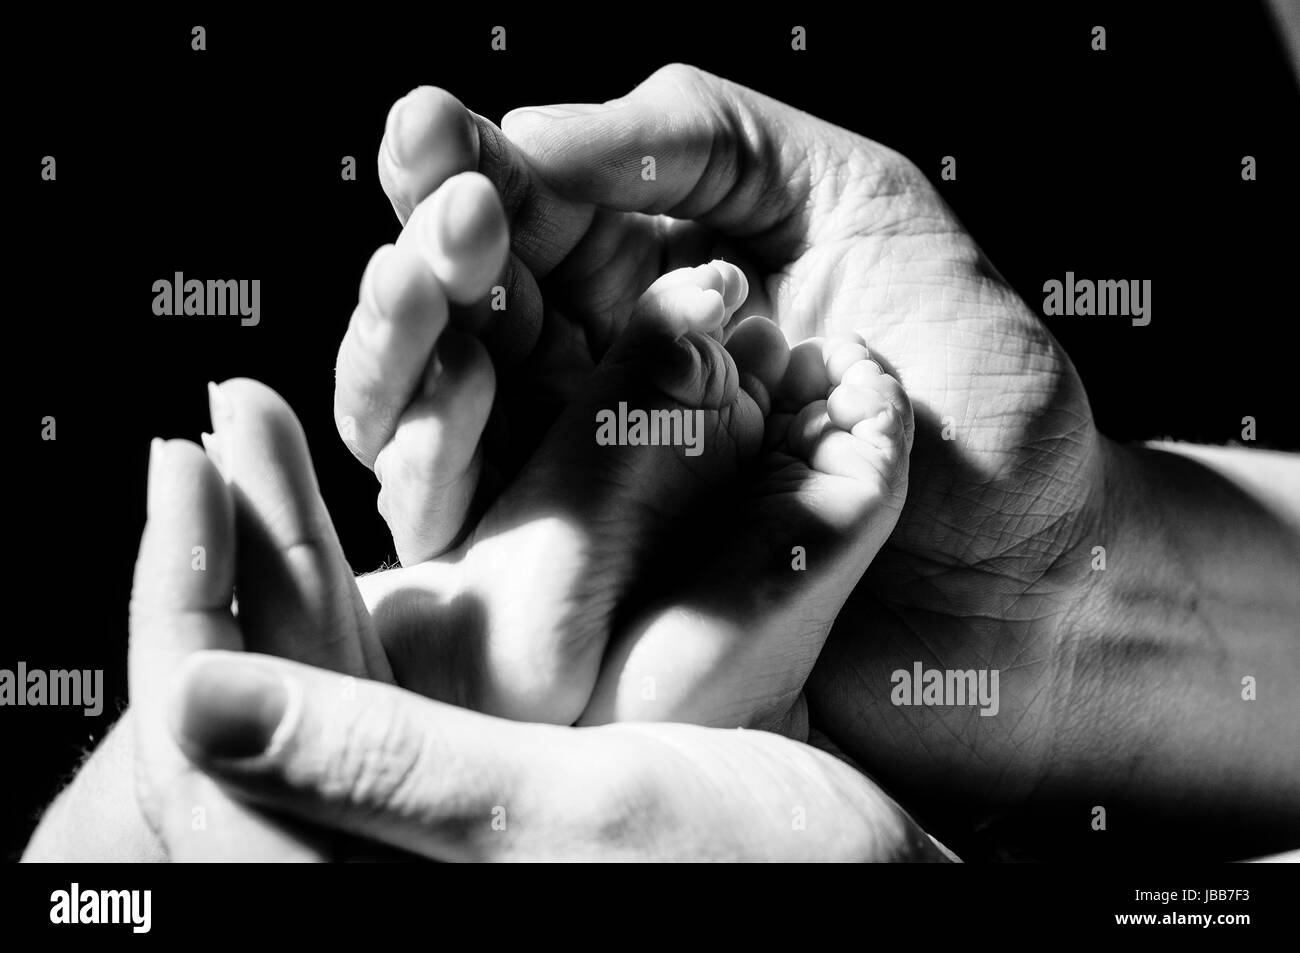 Mammas Haende umfassen zaertlich und beschuetzend Babys kleine Fuesse, freigestellt vor dunklem Hintergrund. Stock Photo